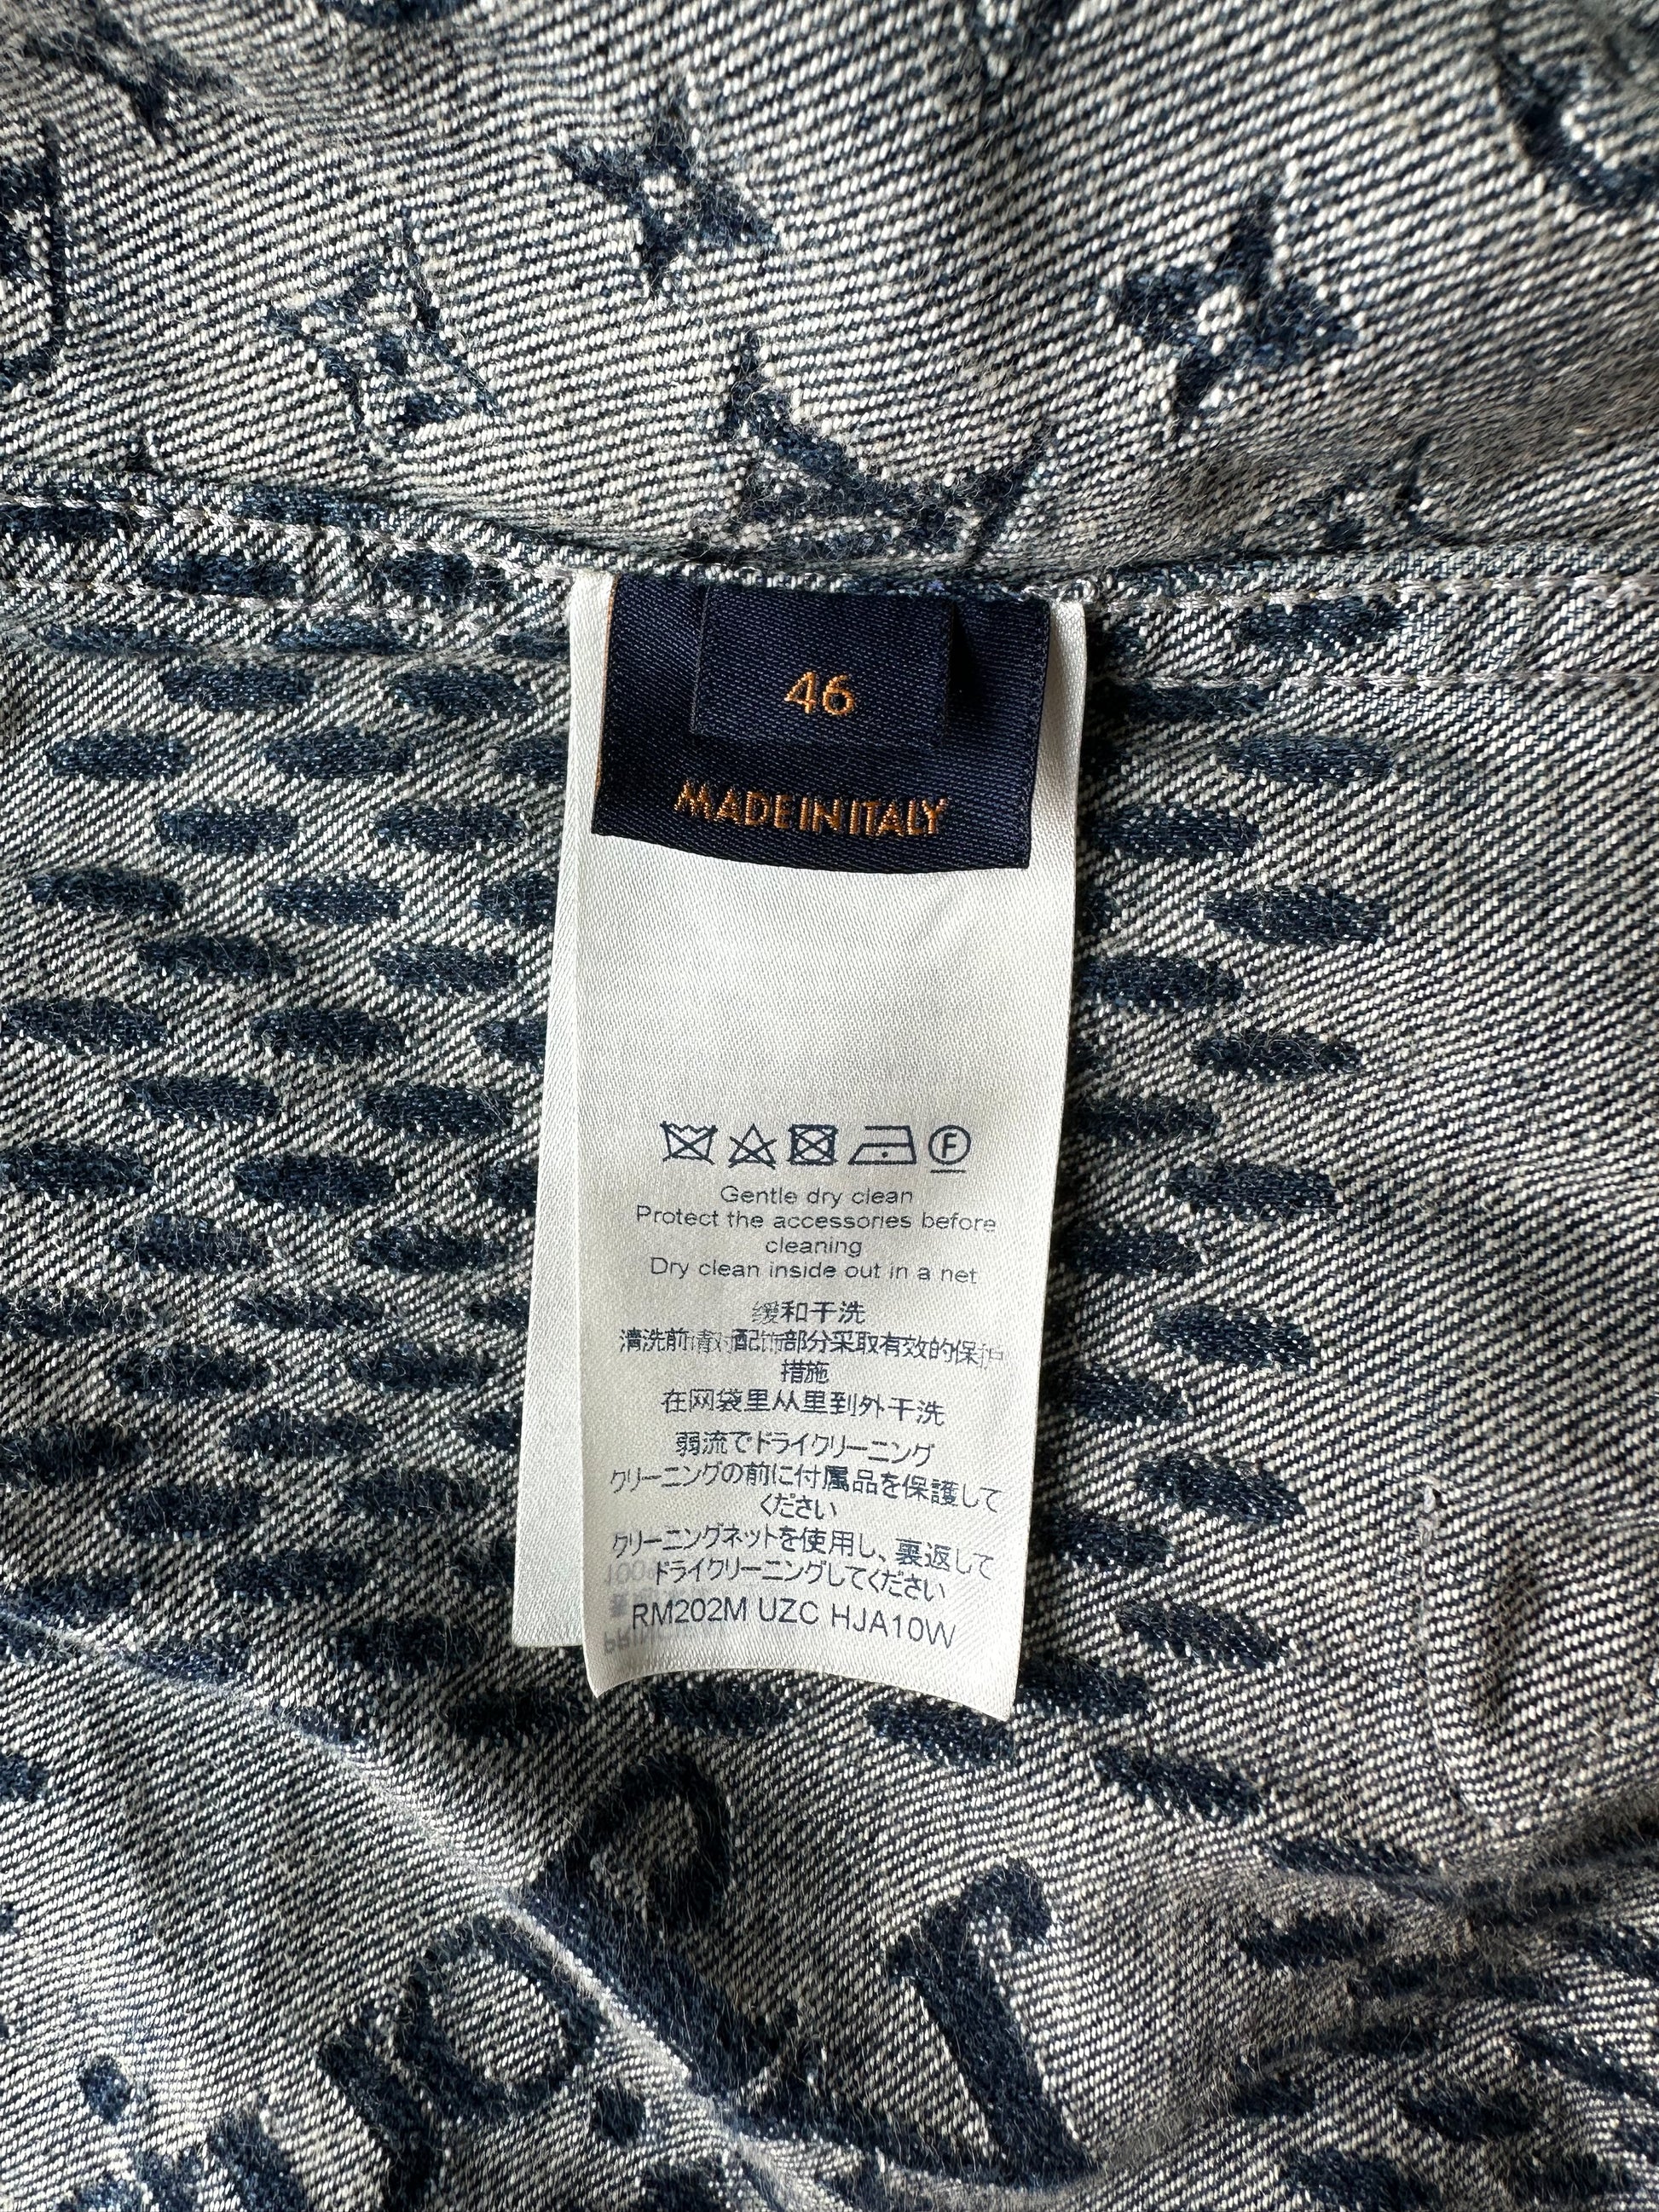 Louis Vuitton Giant Damier Monogram Waves Flannel Shirt VCCM07 Sz - S -  170/84A